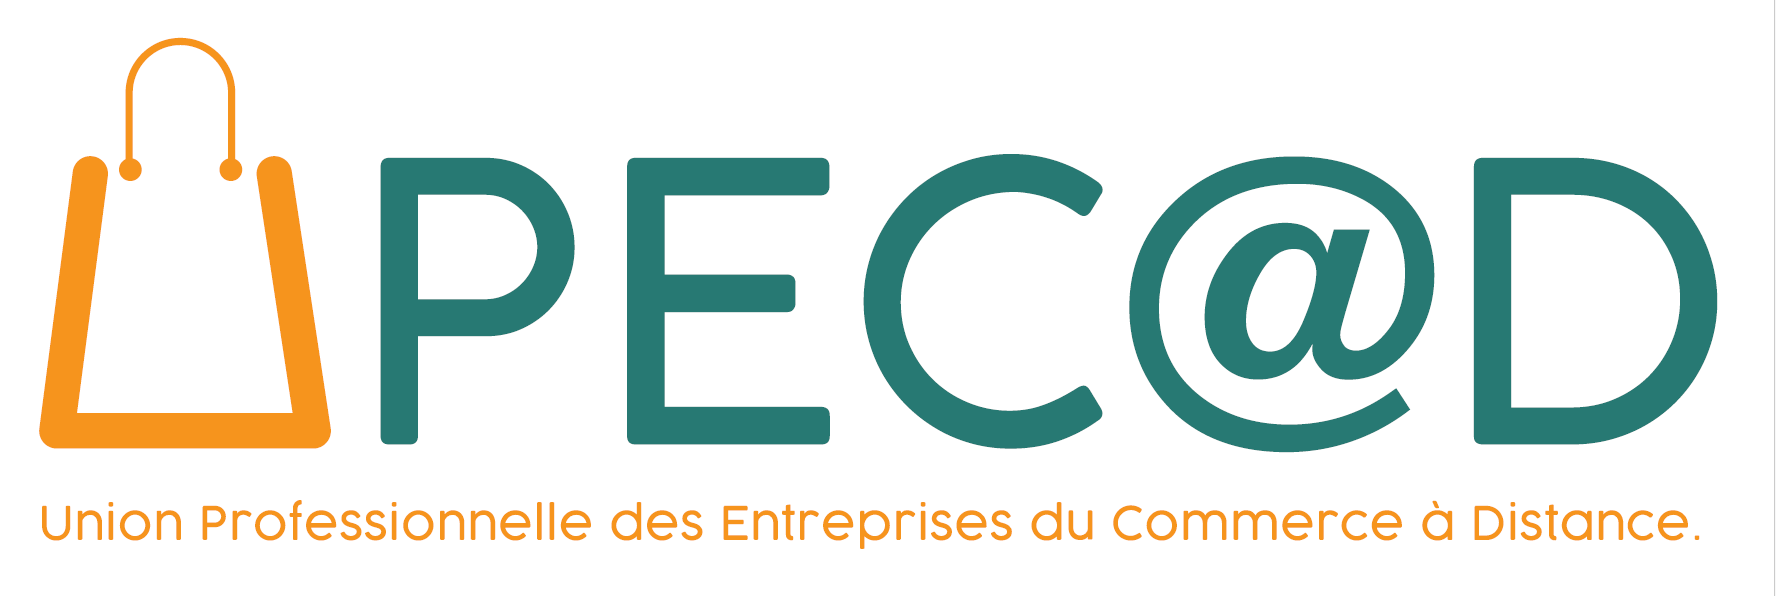 logo UPECAD Union Professionnelle des Entreprises du Commerce à Distance